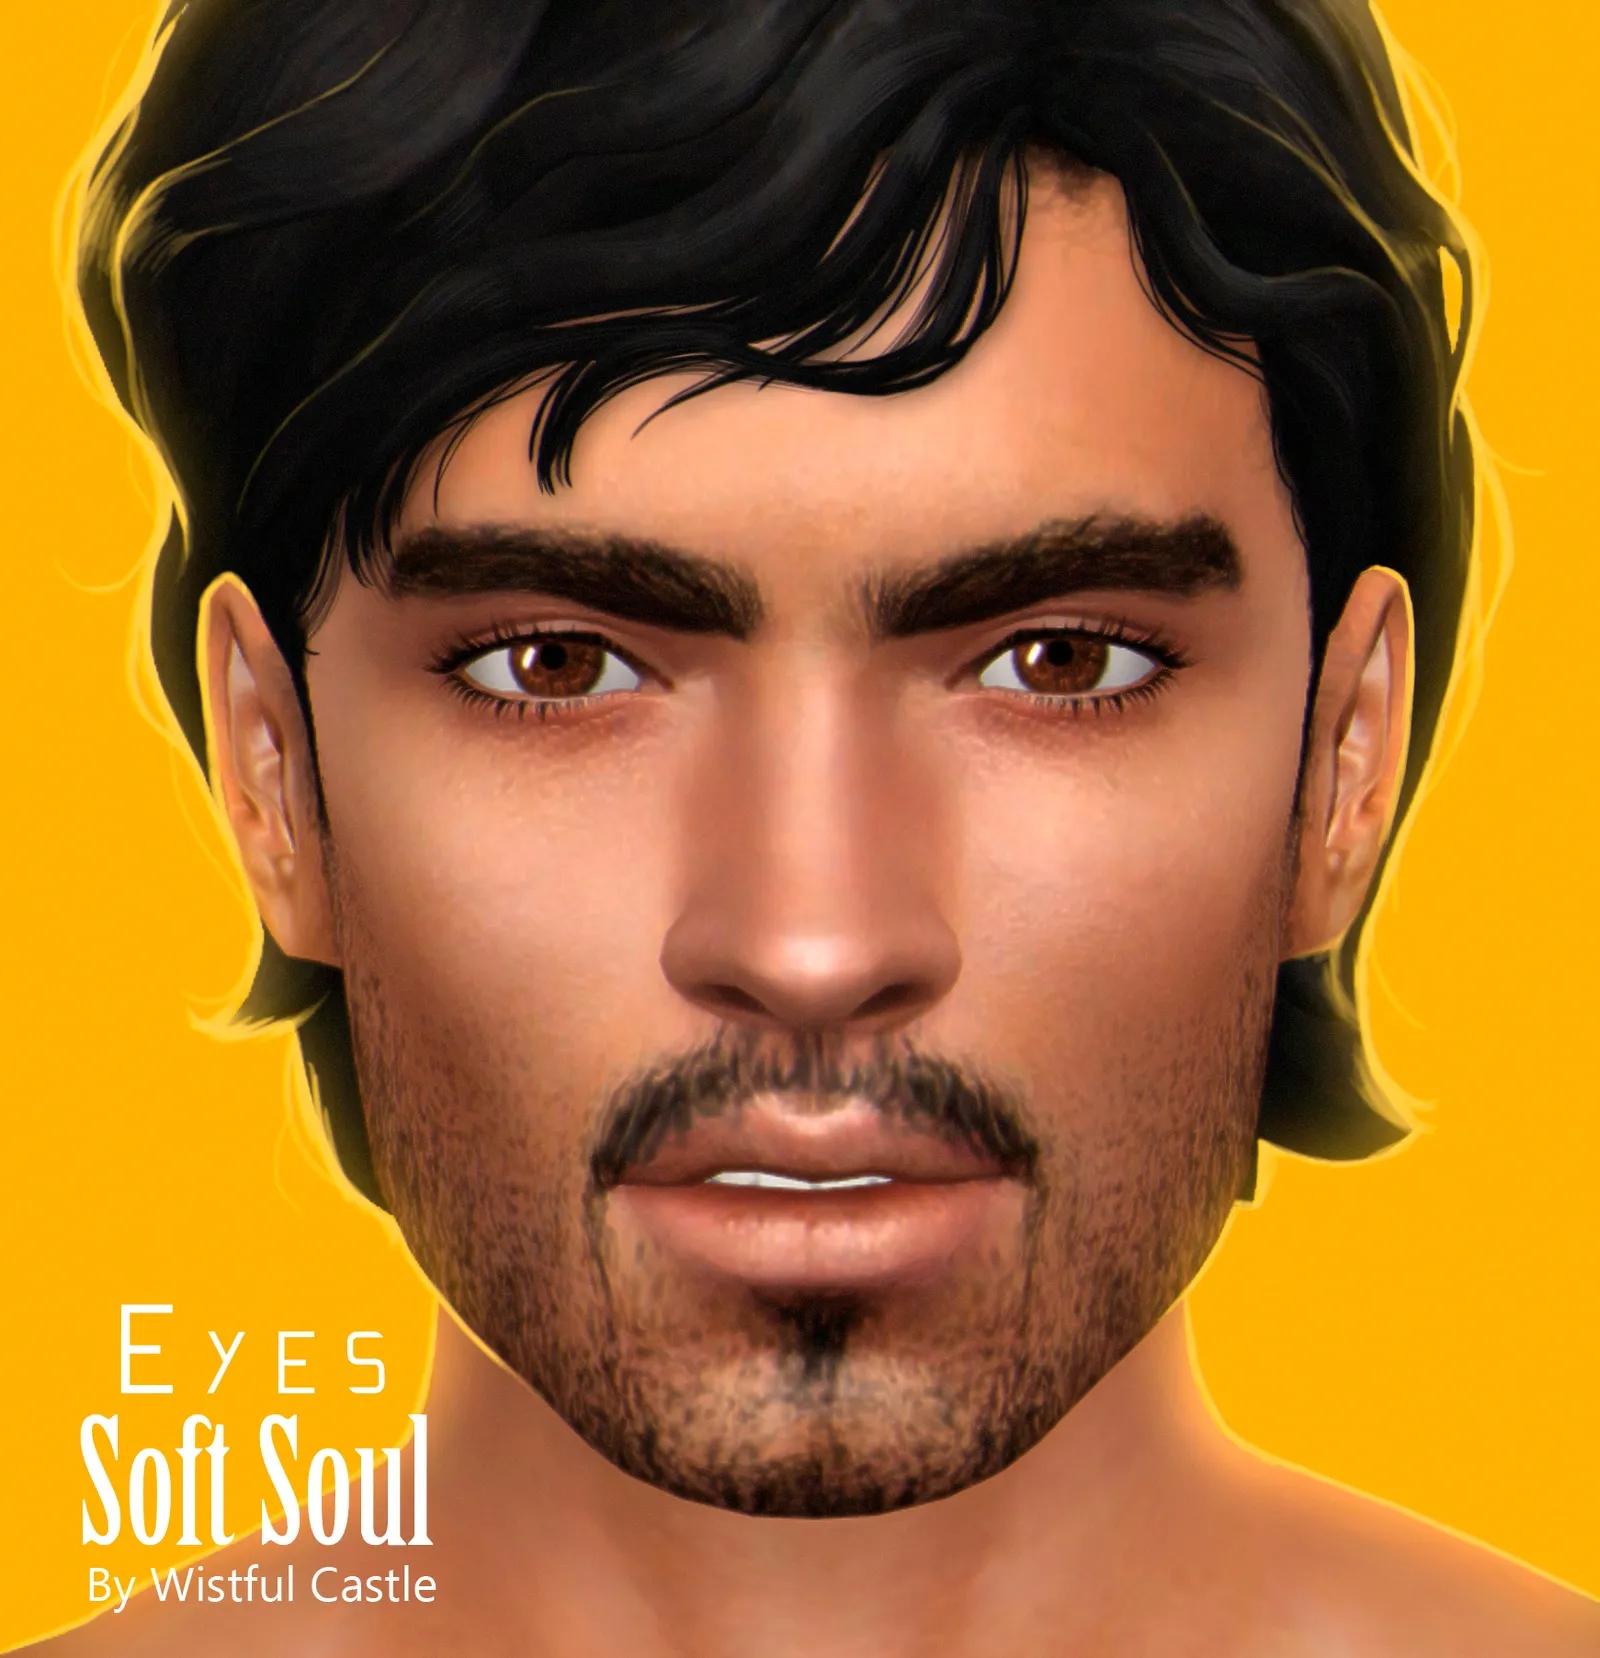 Soft Soul (Eyes)